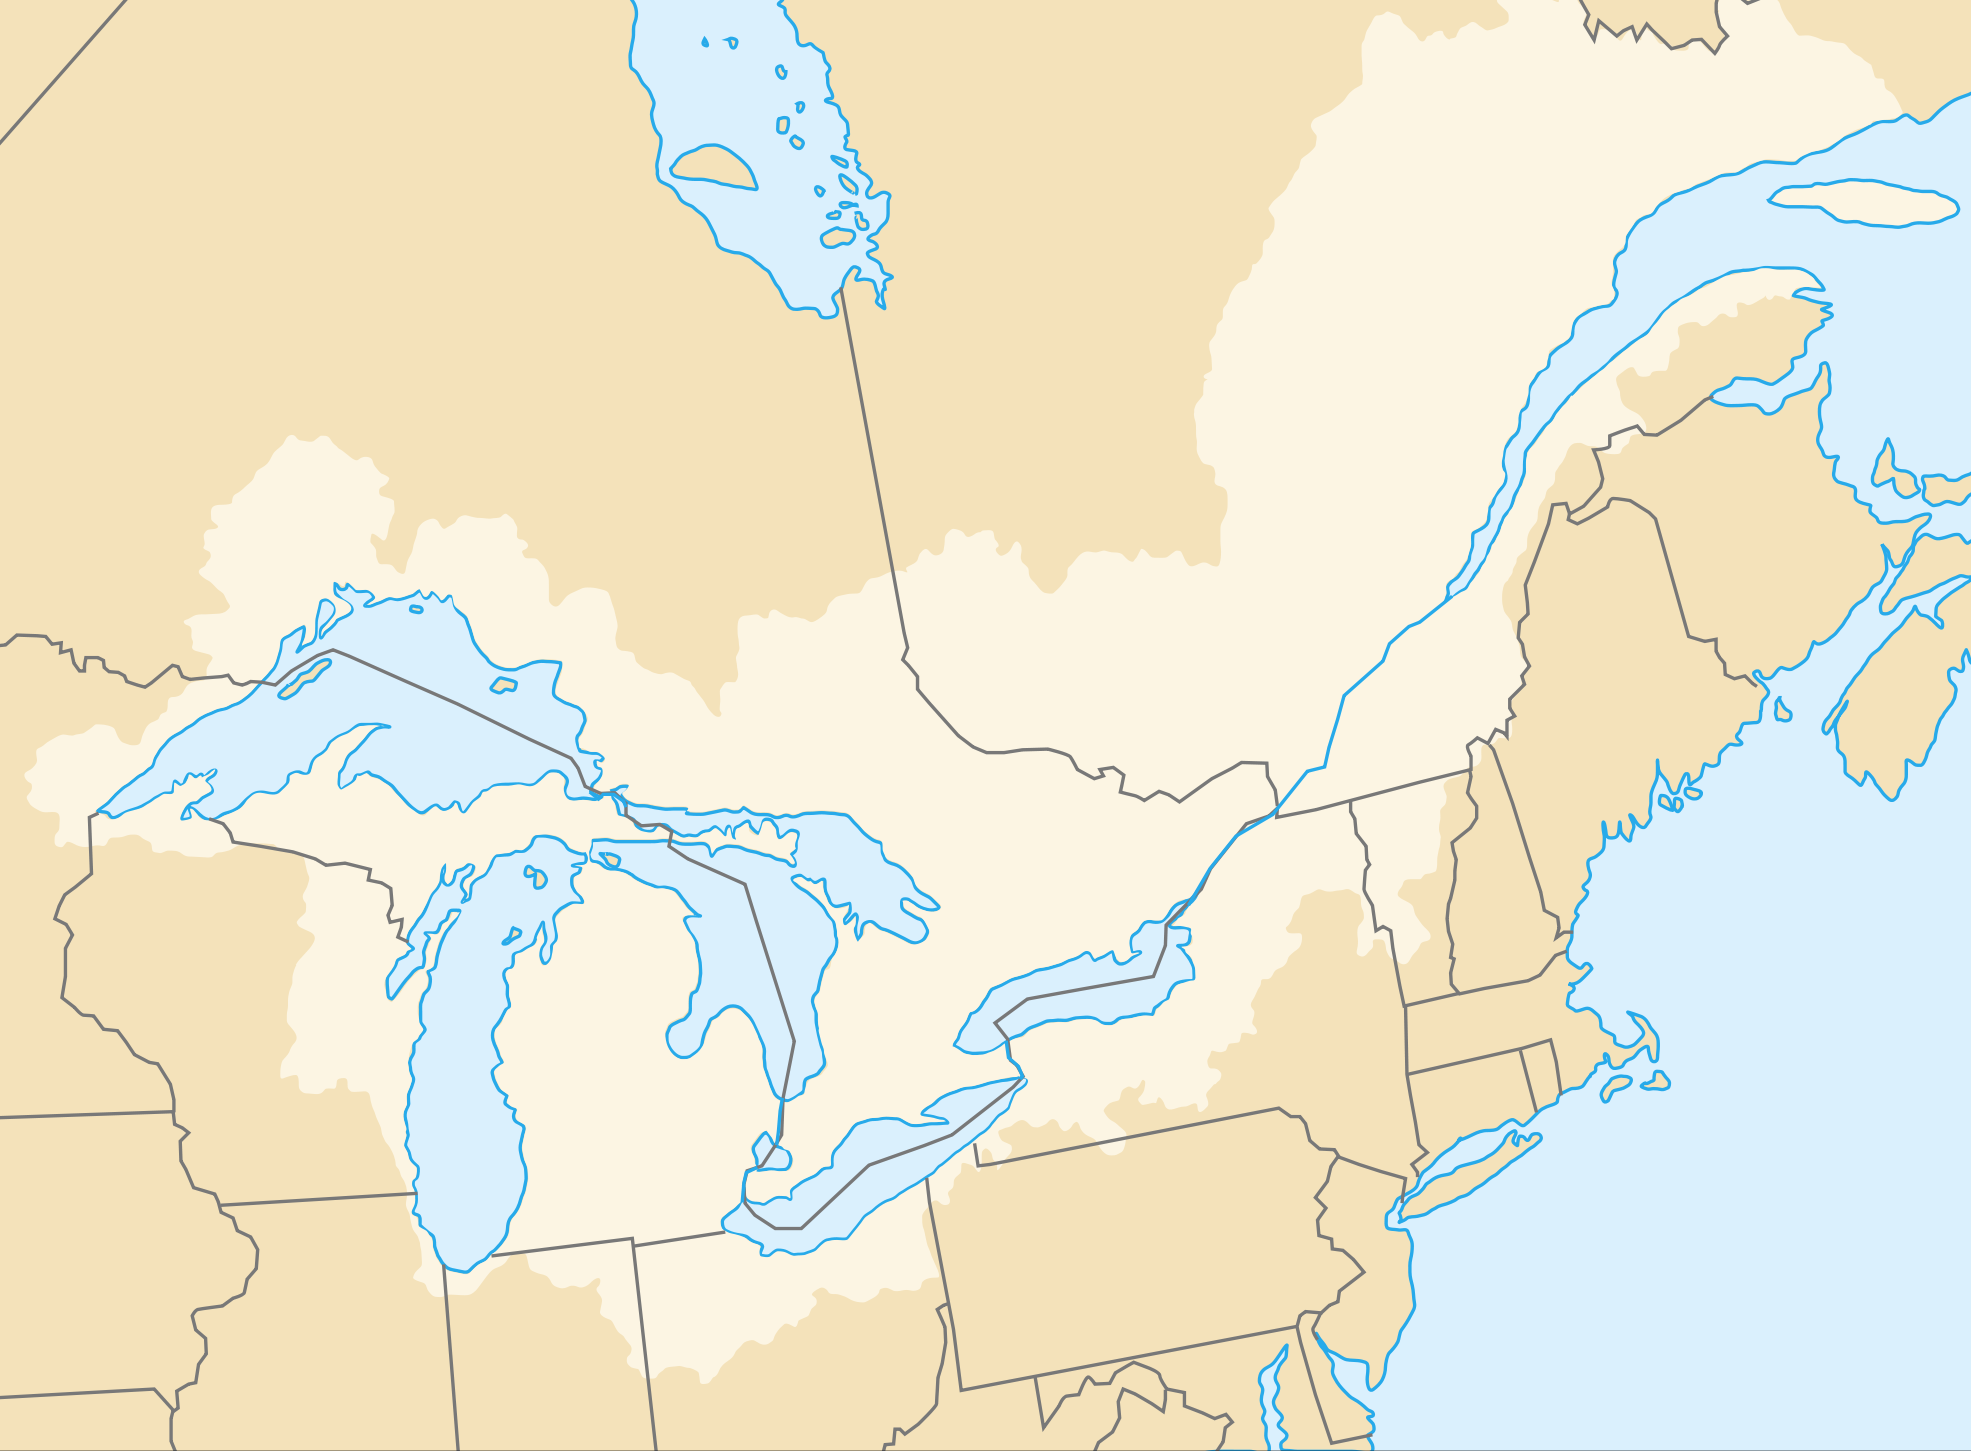 Святого лаврентия какой океан. Река Святого Лаврентия на карте Северной Америки. Эстуарий реки Святого Лаврентия. Река Святая Лаврентия на карте Северной Америки.